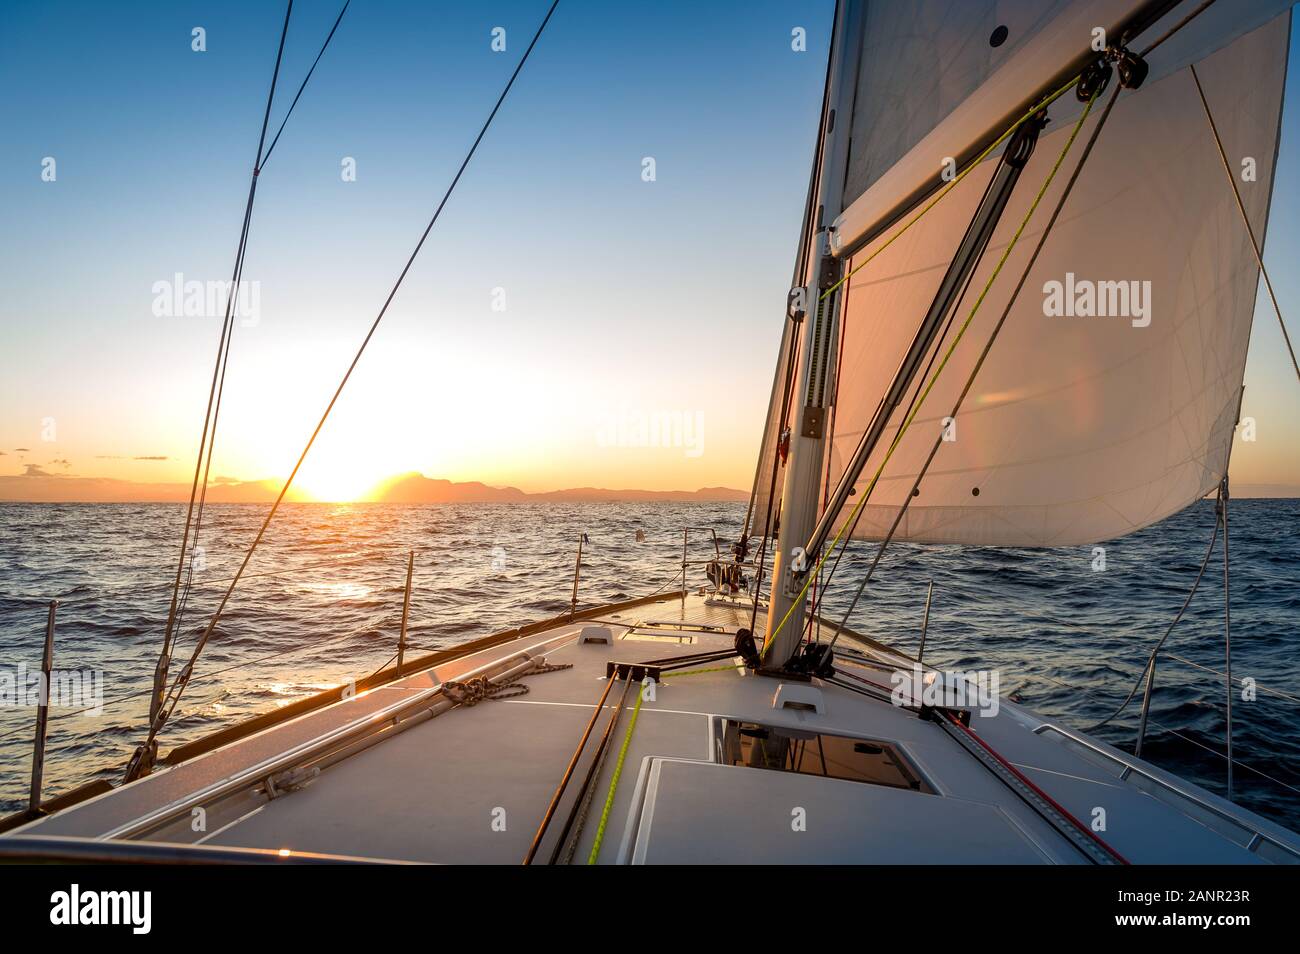 A la poursuite du soleil au yacht à voile. Pont et voiles d'sailoat pointant vers le lever du soleil. La mer Méditerranée, l'Italie. Banque D'Images